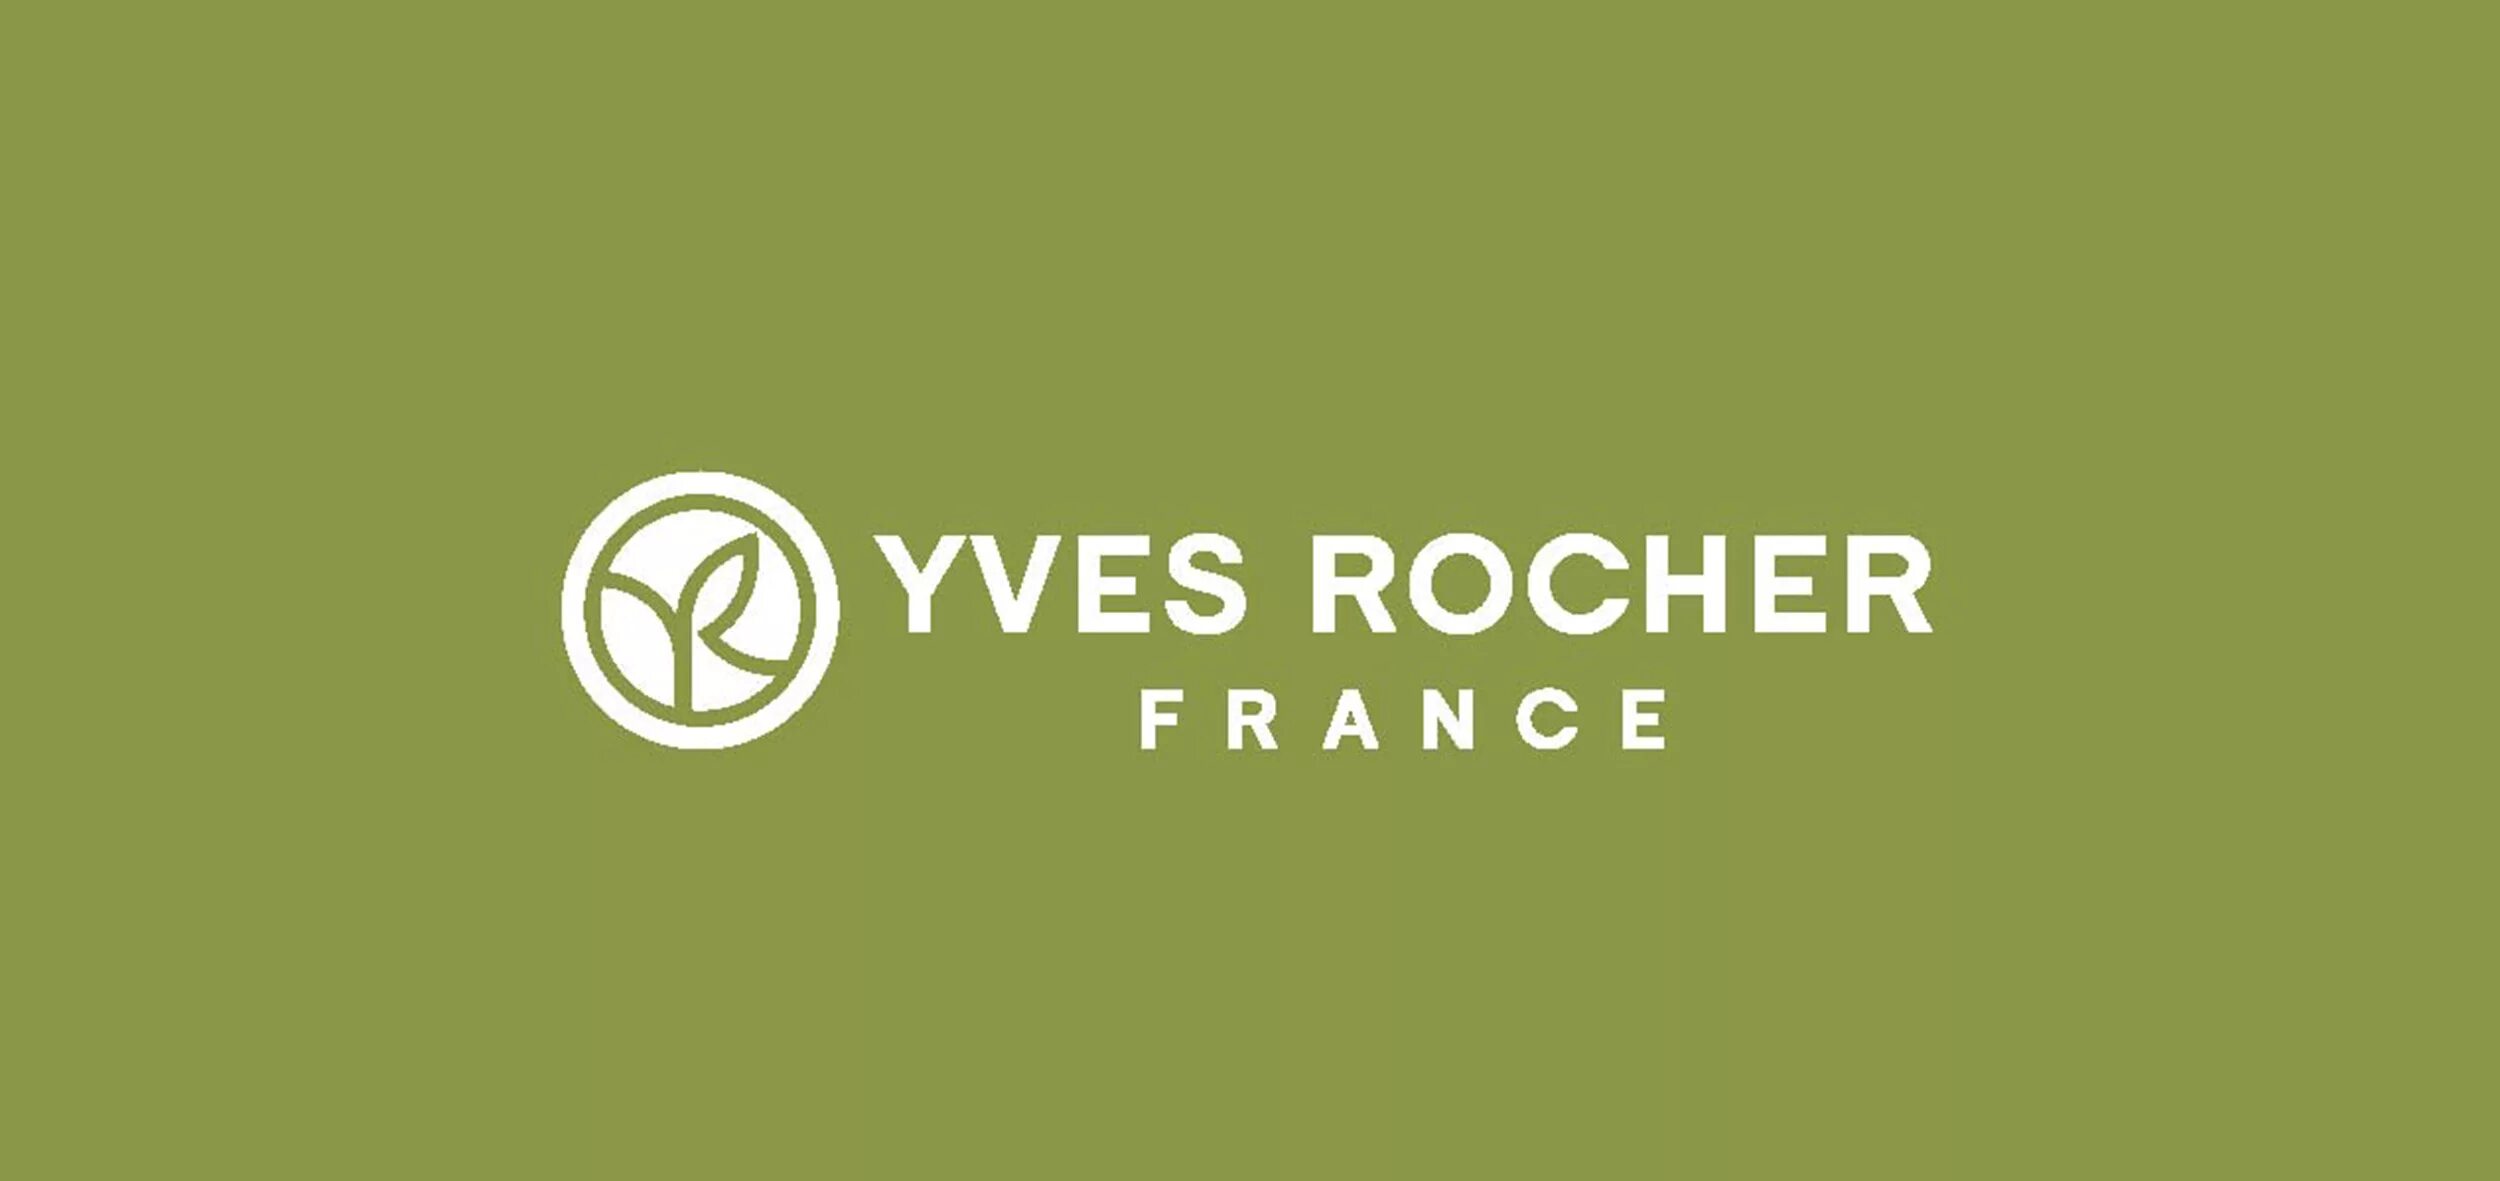 Ив роше саратов. Ив Роше лого. Yves Rocher логотип. Yves Rocher картинки. Yves Rocher France логотип.